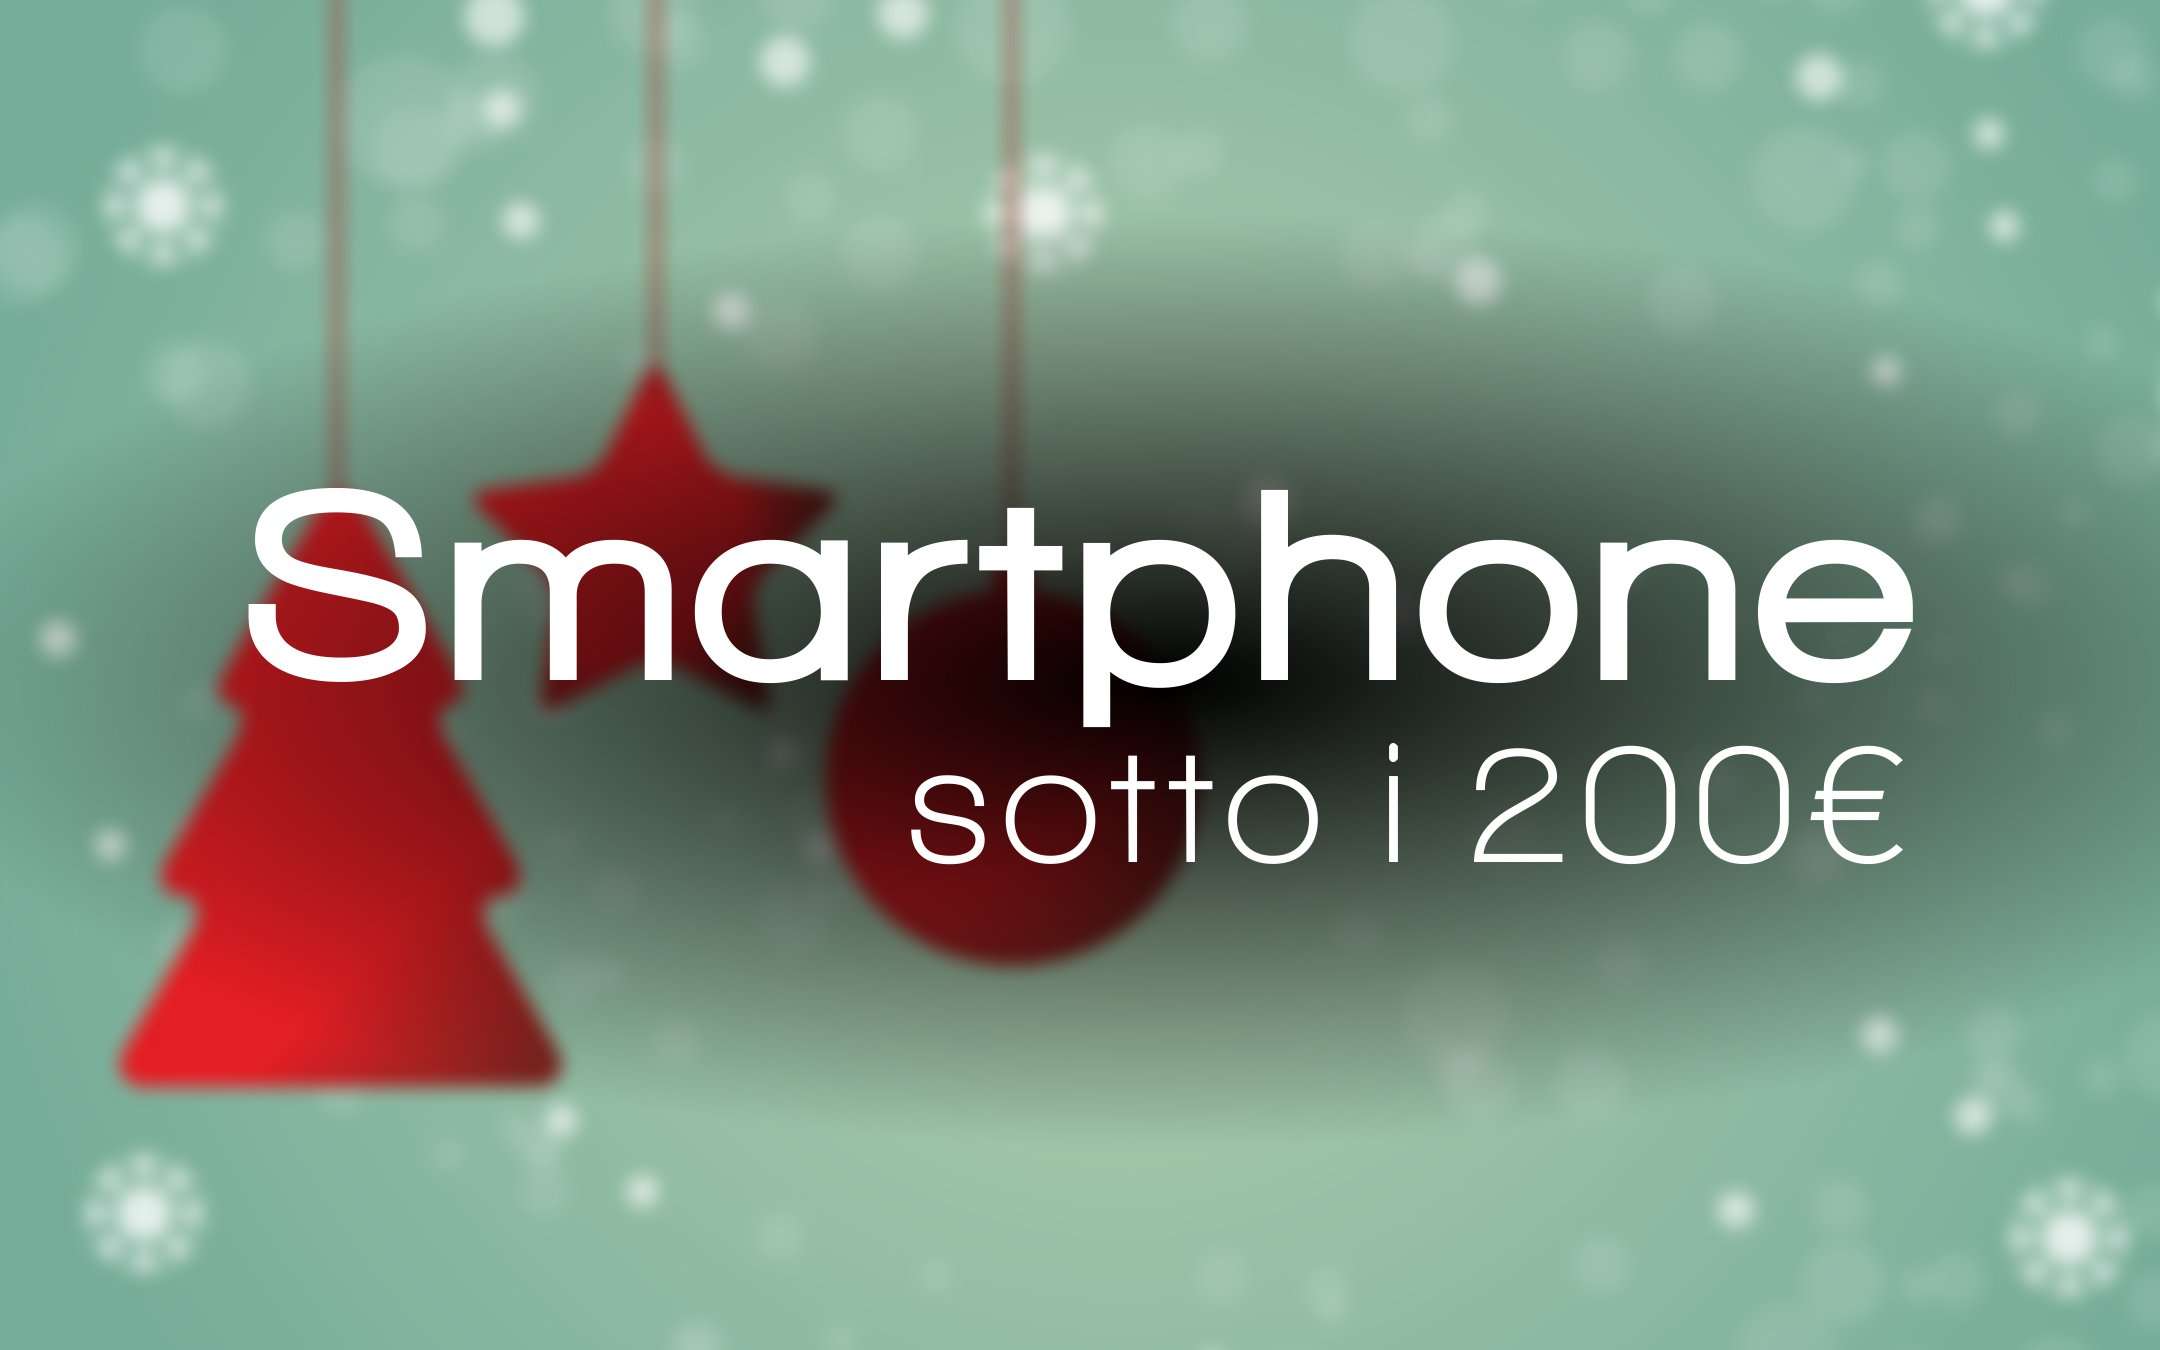 Natale 2018: tre smartphone a meno di 200€